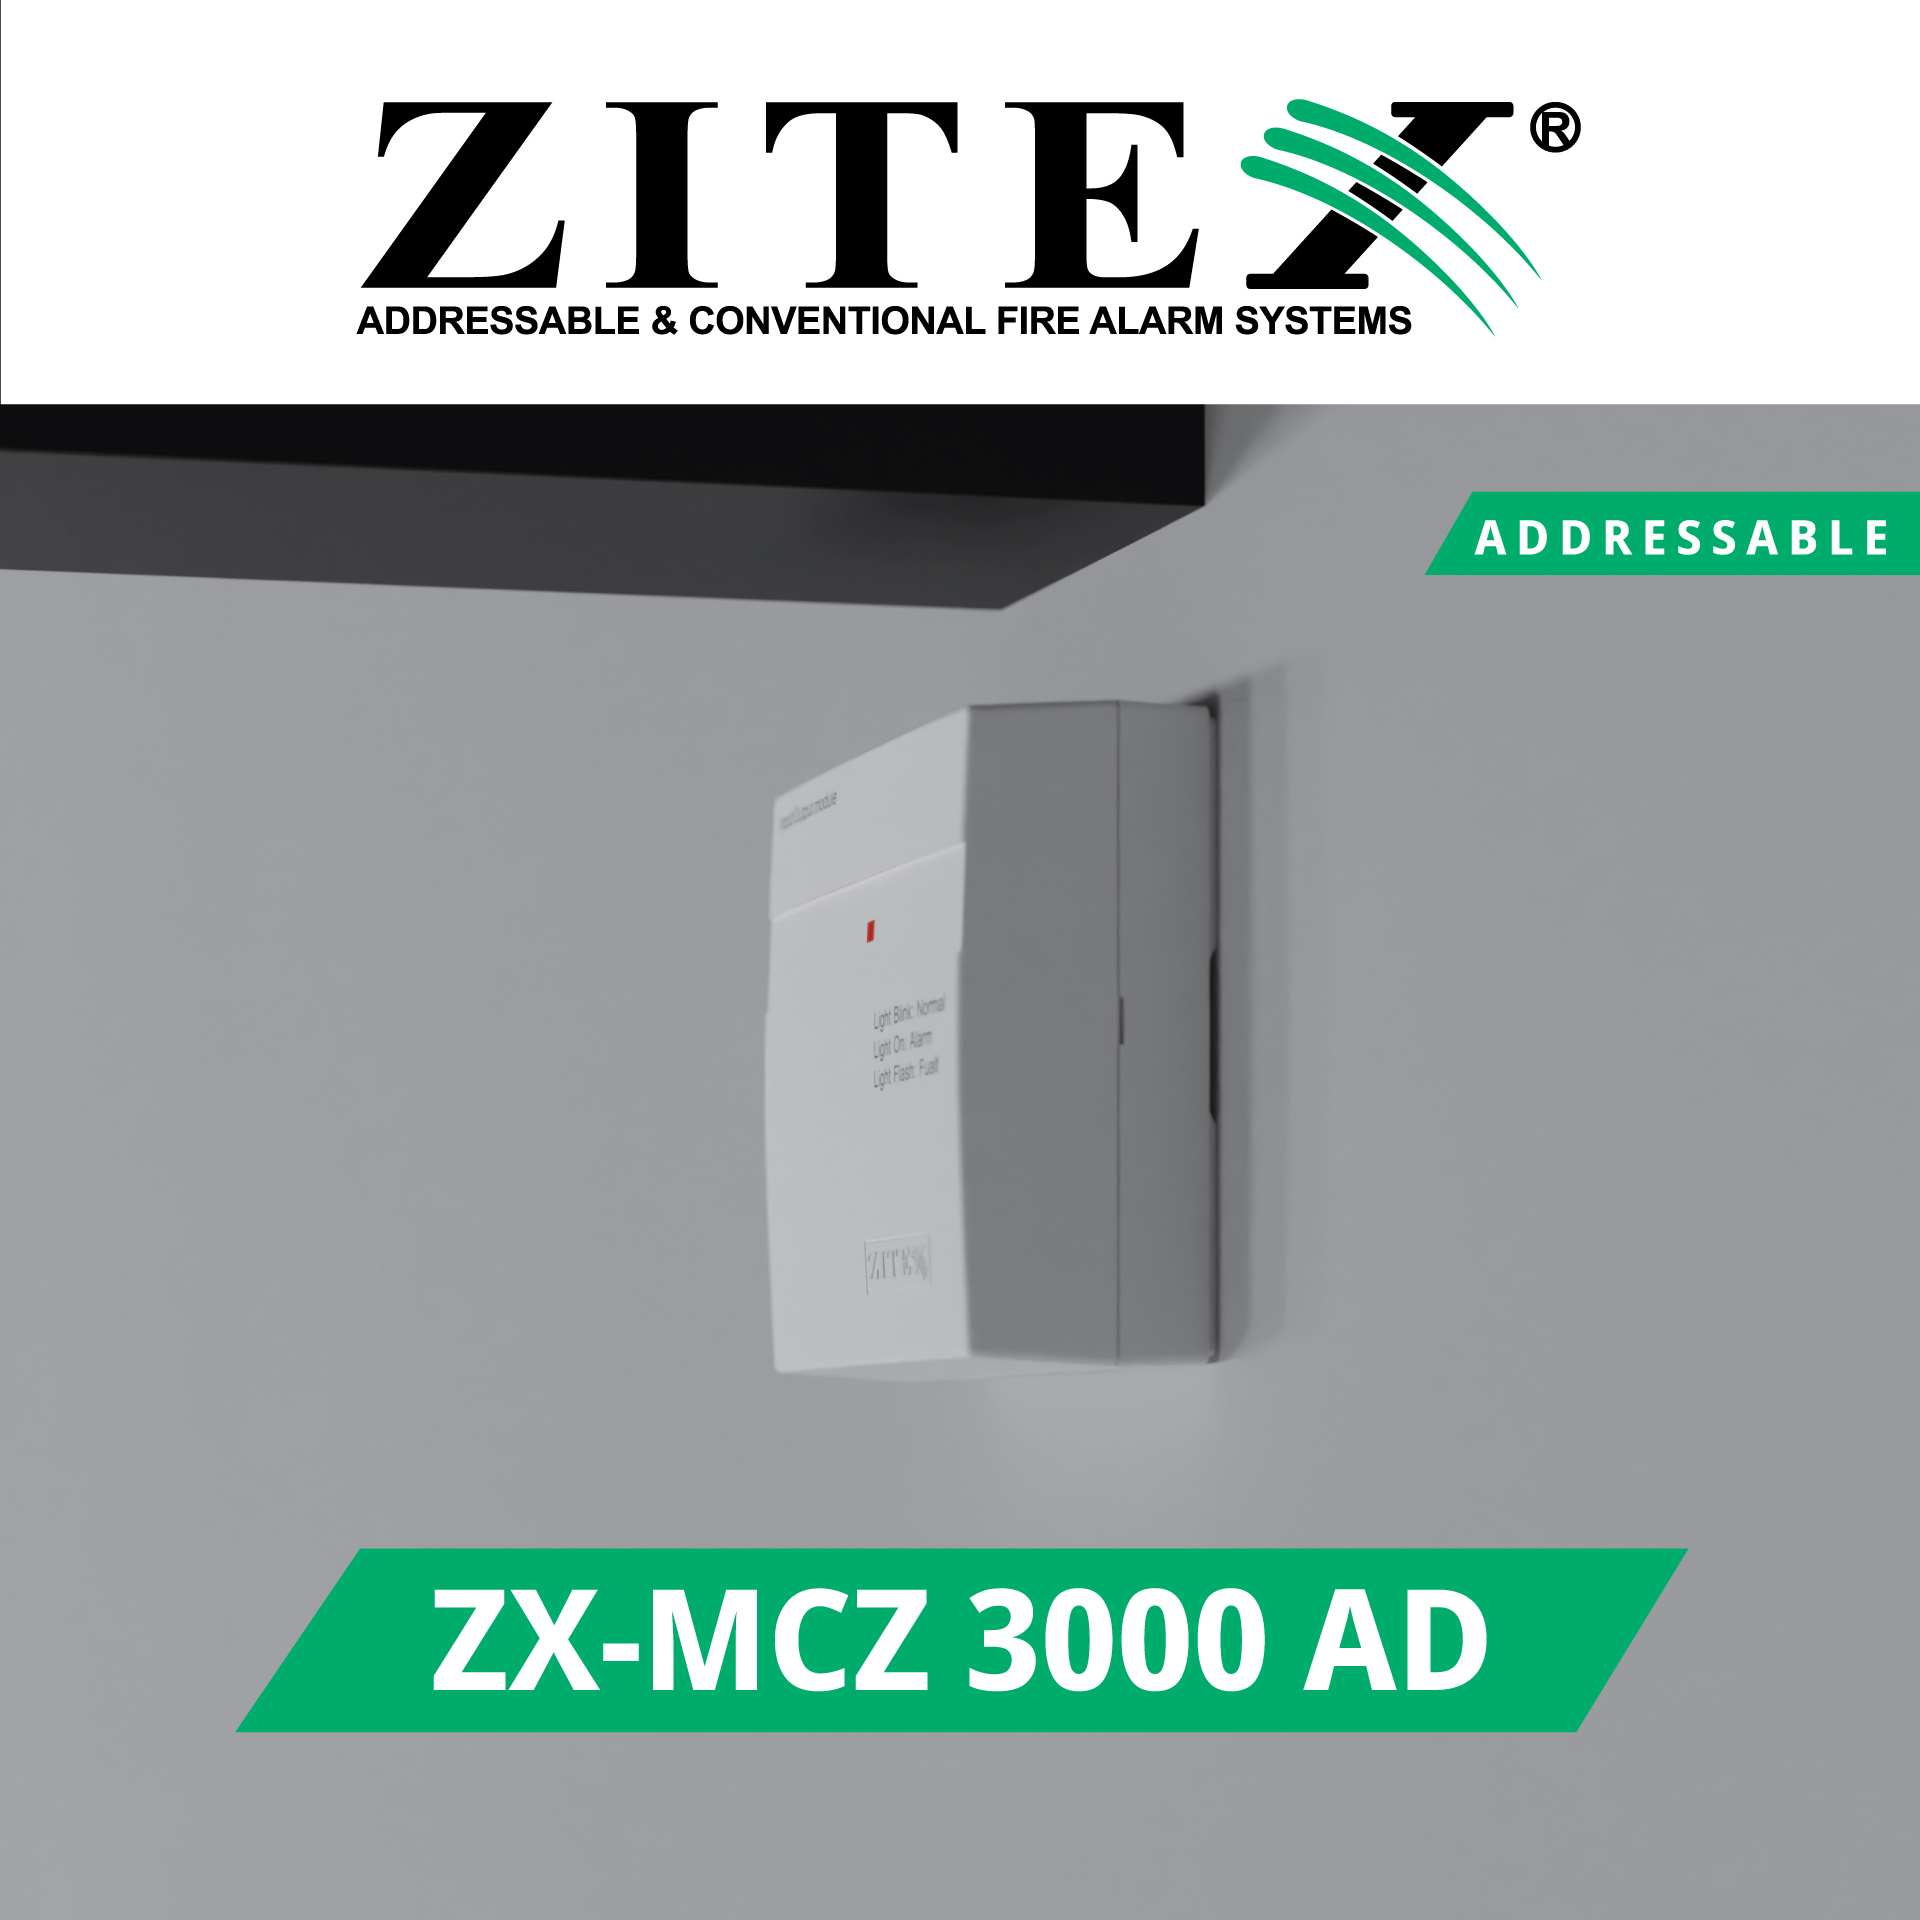 ماژول زون کانونشنال آدرس پذیر ZX-MCZ 3000 AD​